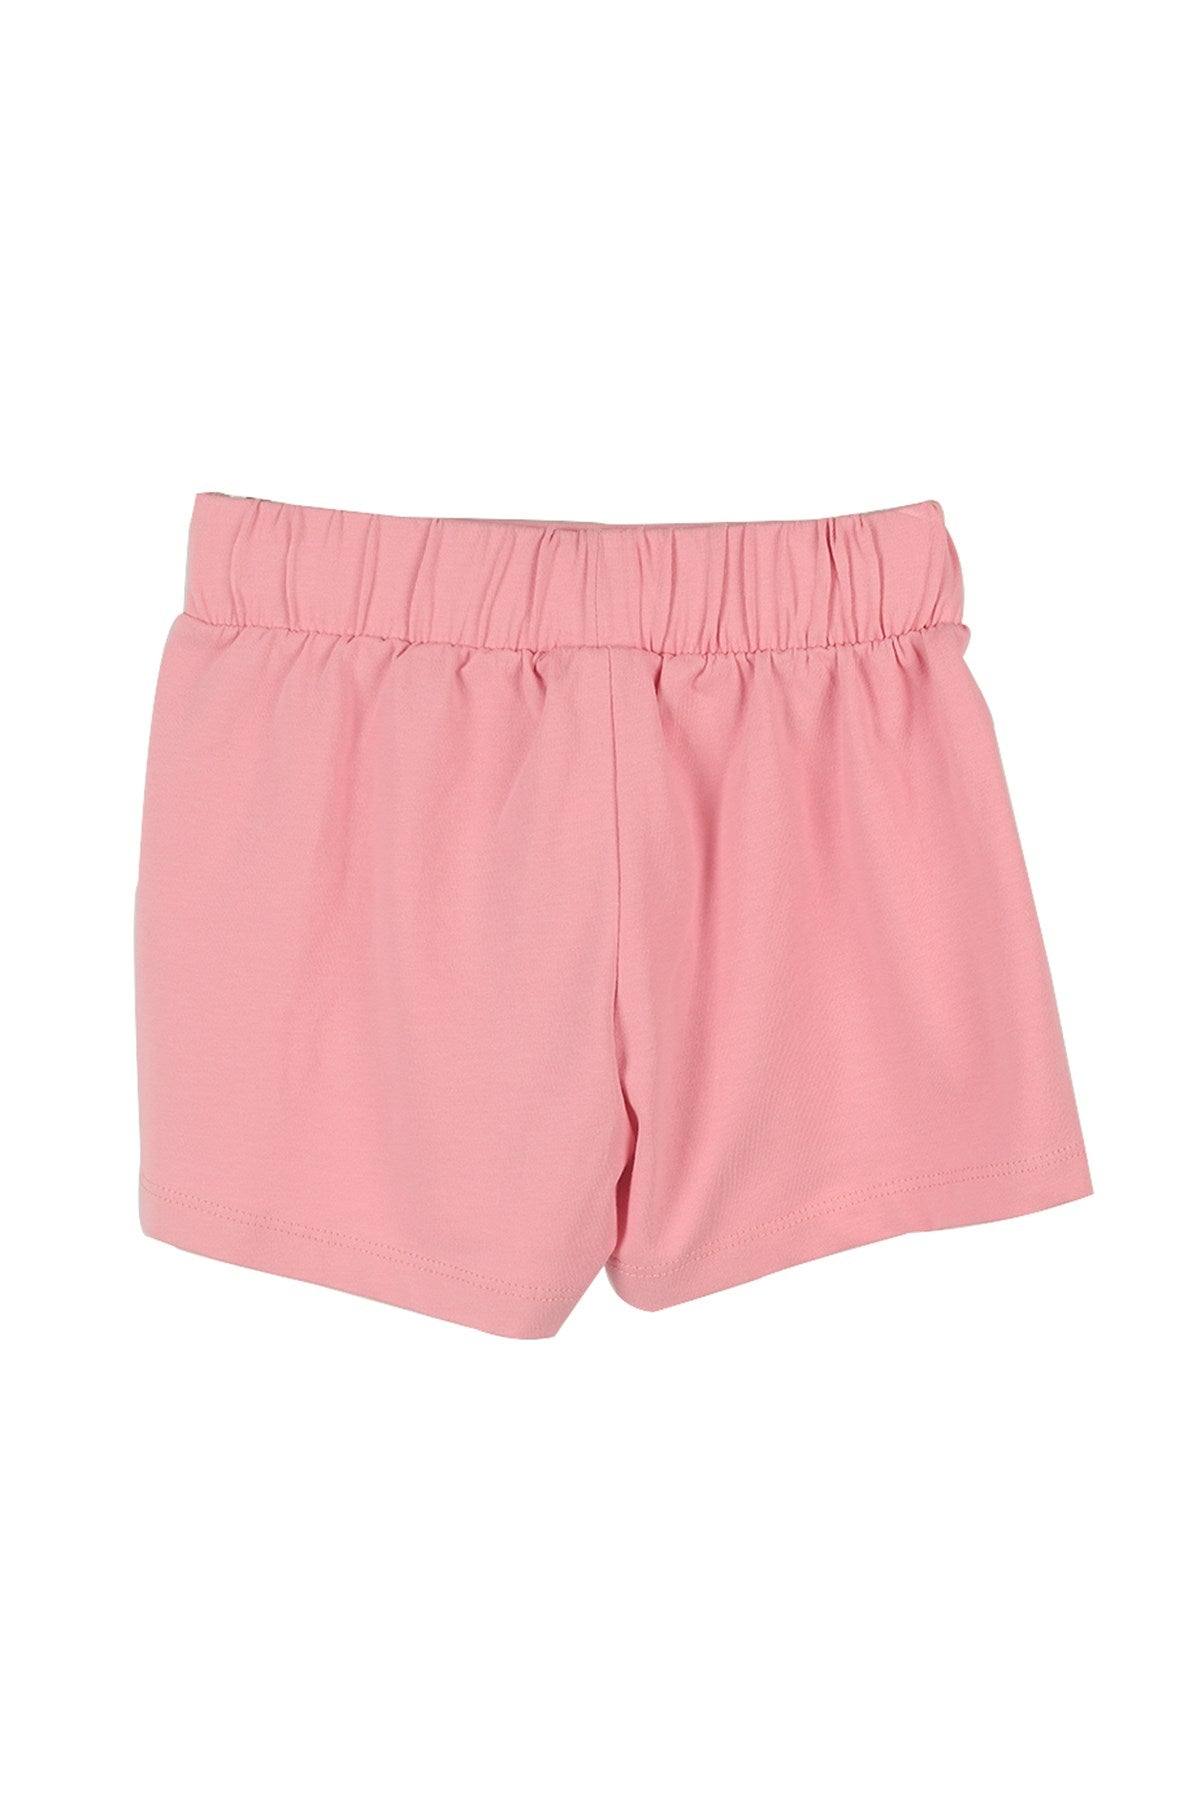 Baby Pink Girls Shorts - Baby Pink Girls Shorts - 2 Years - Silversun - Melymod